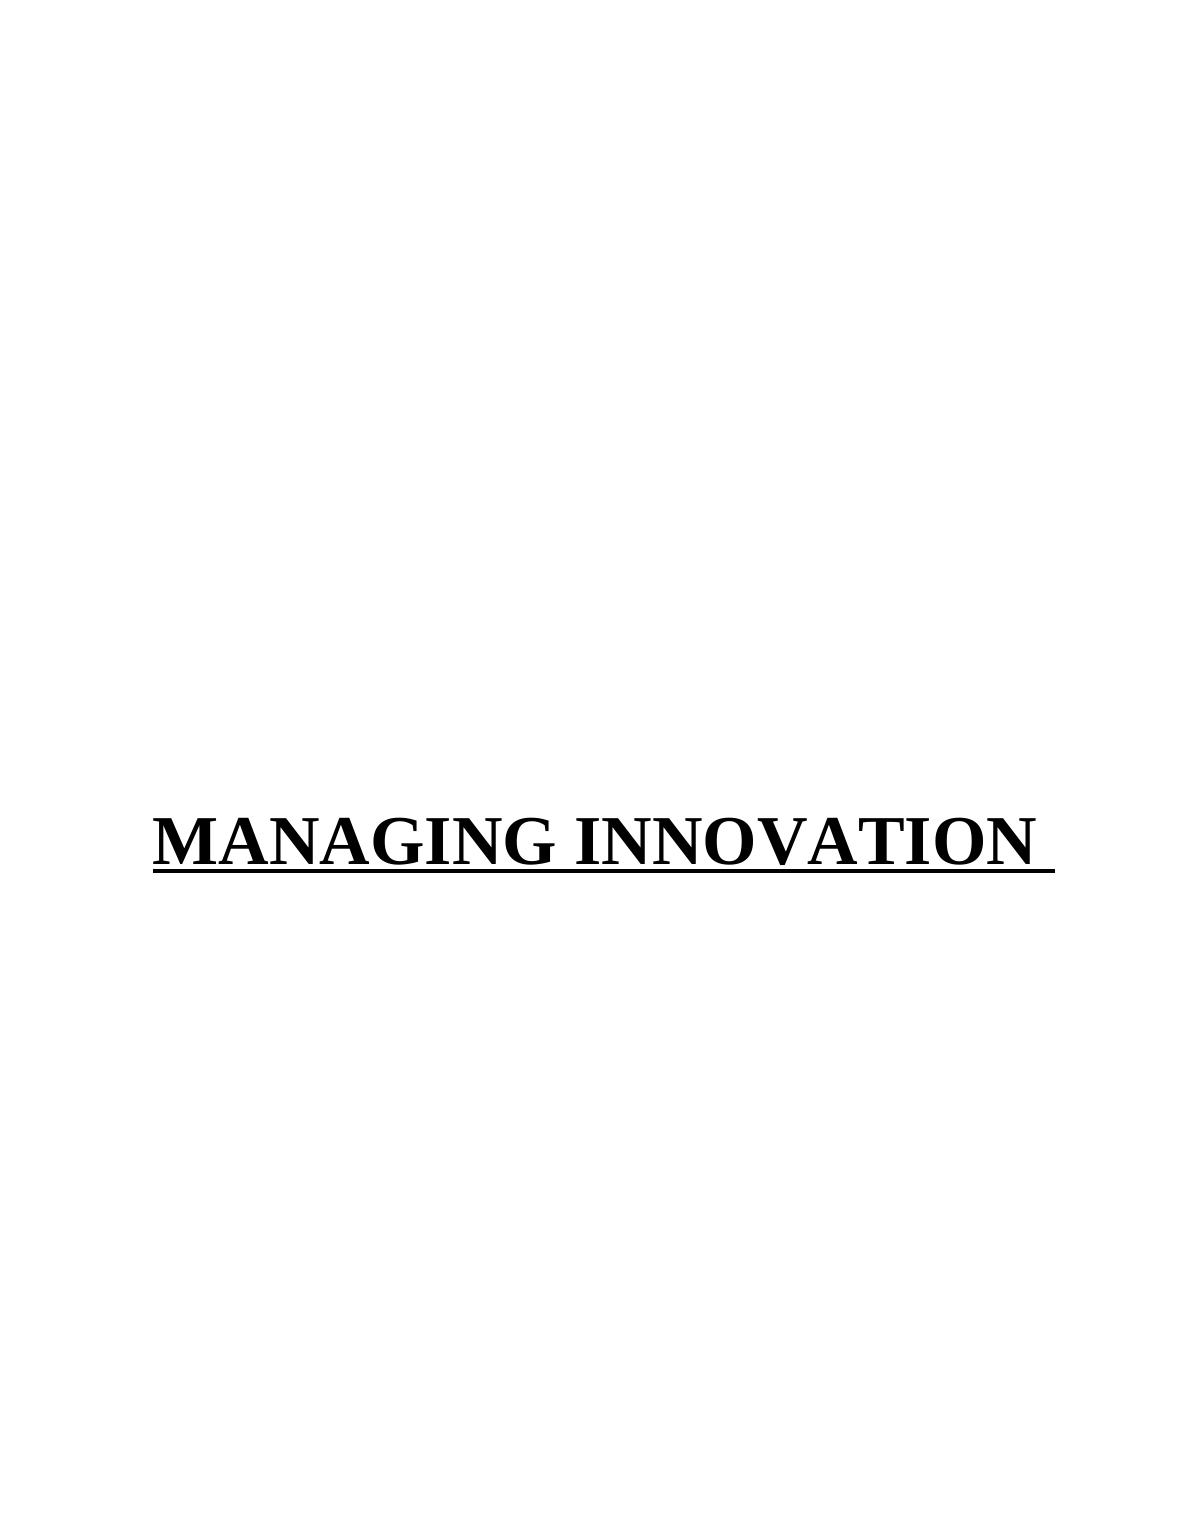 Managing Innovation_1